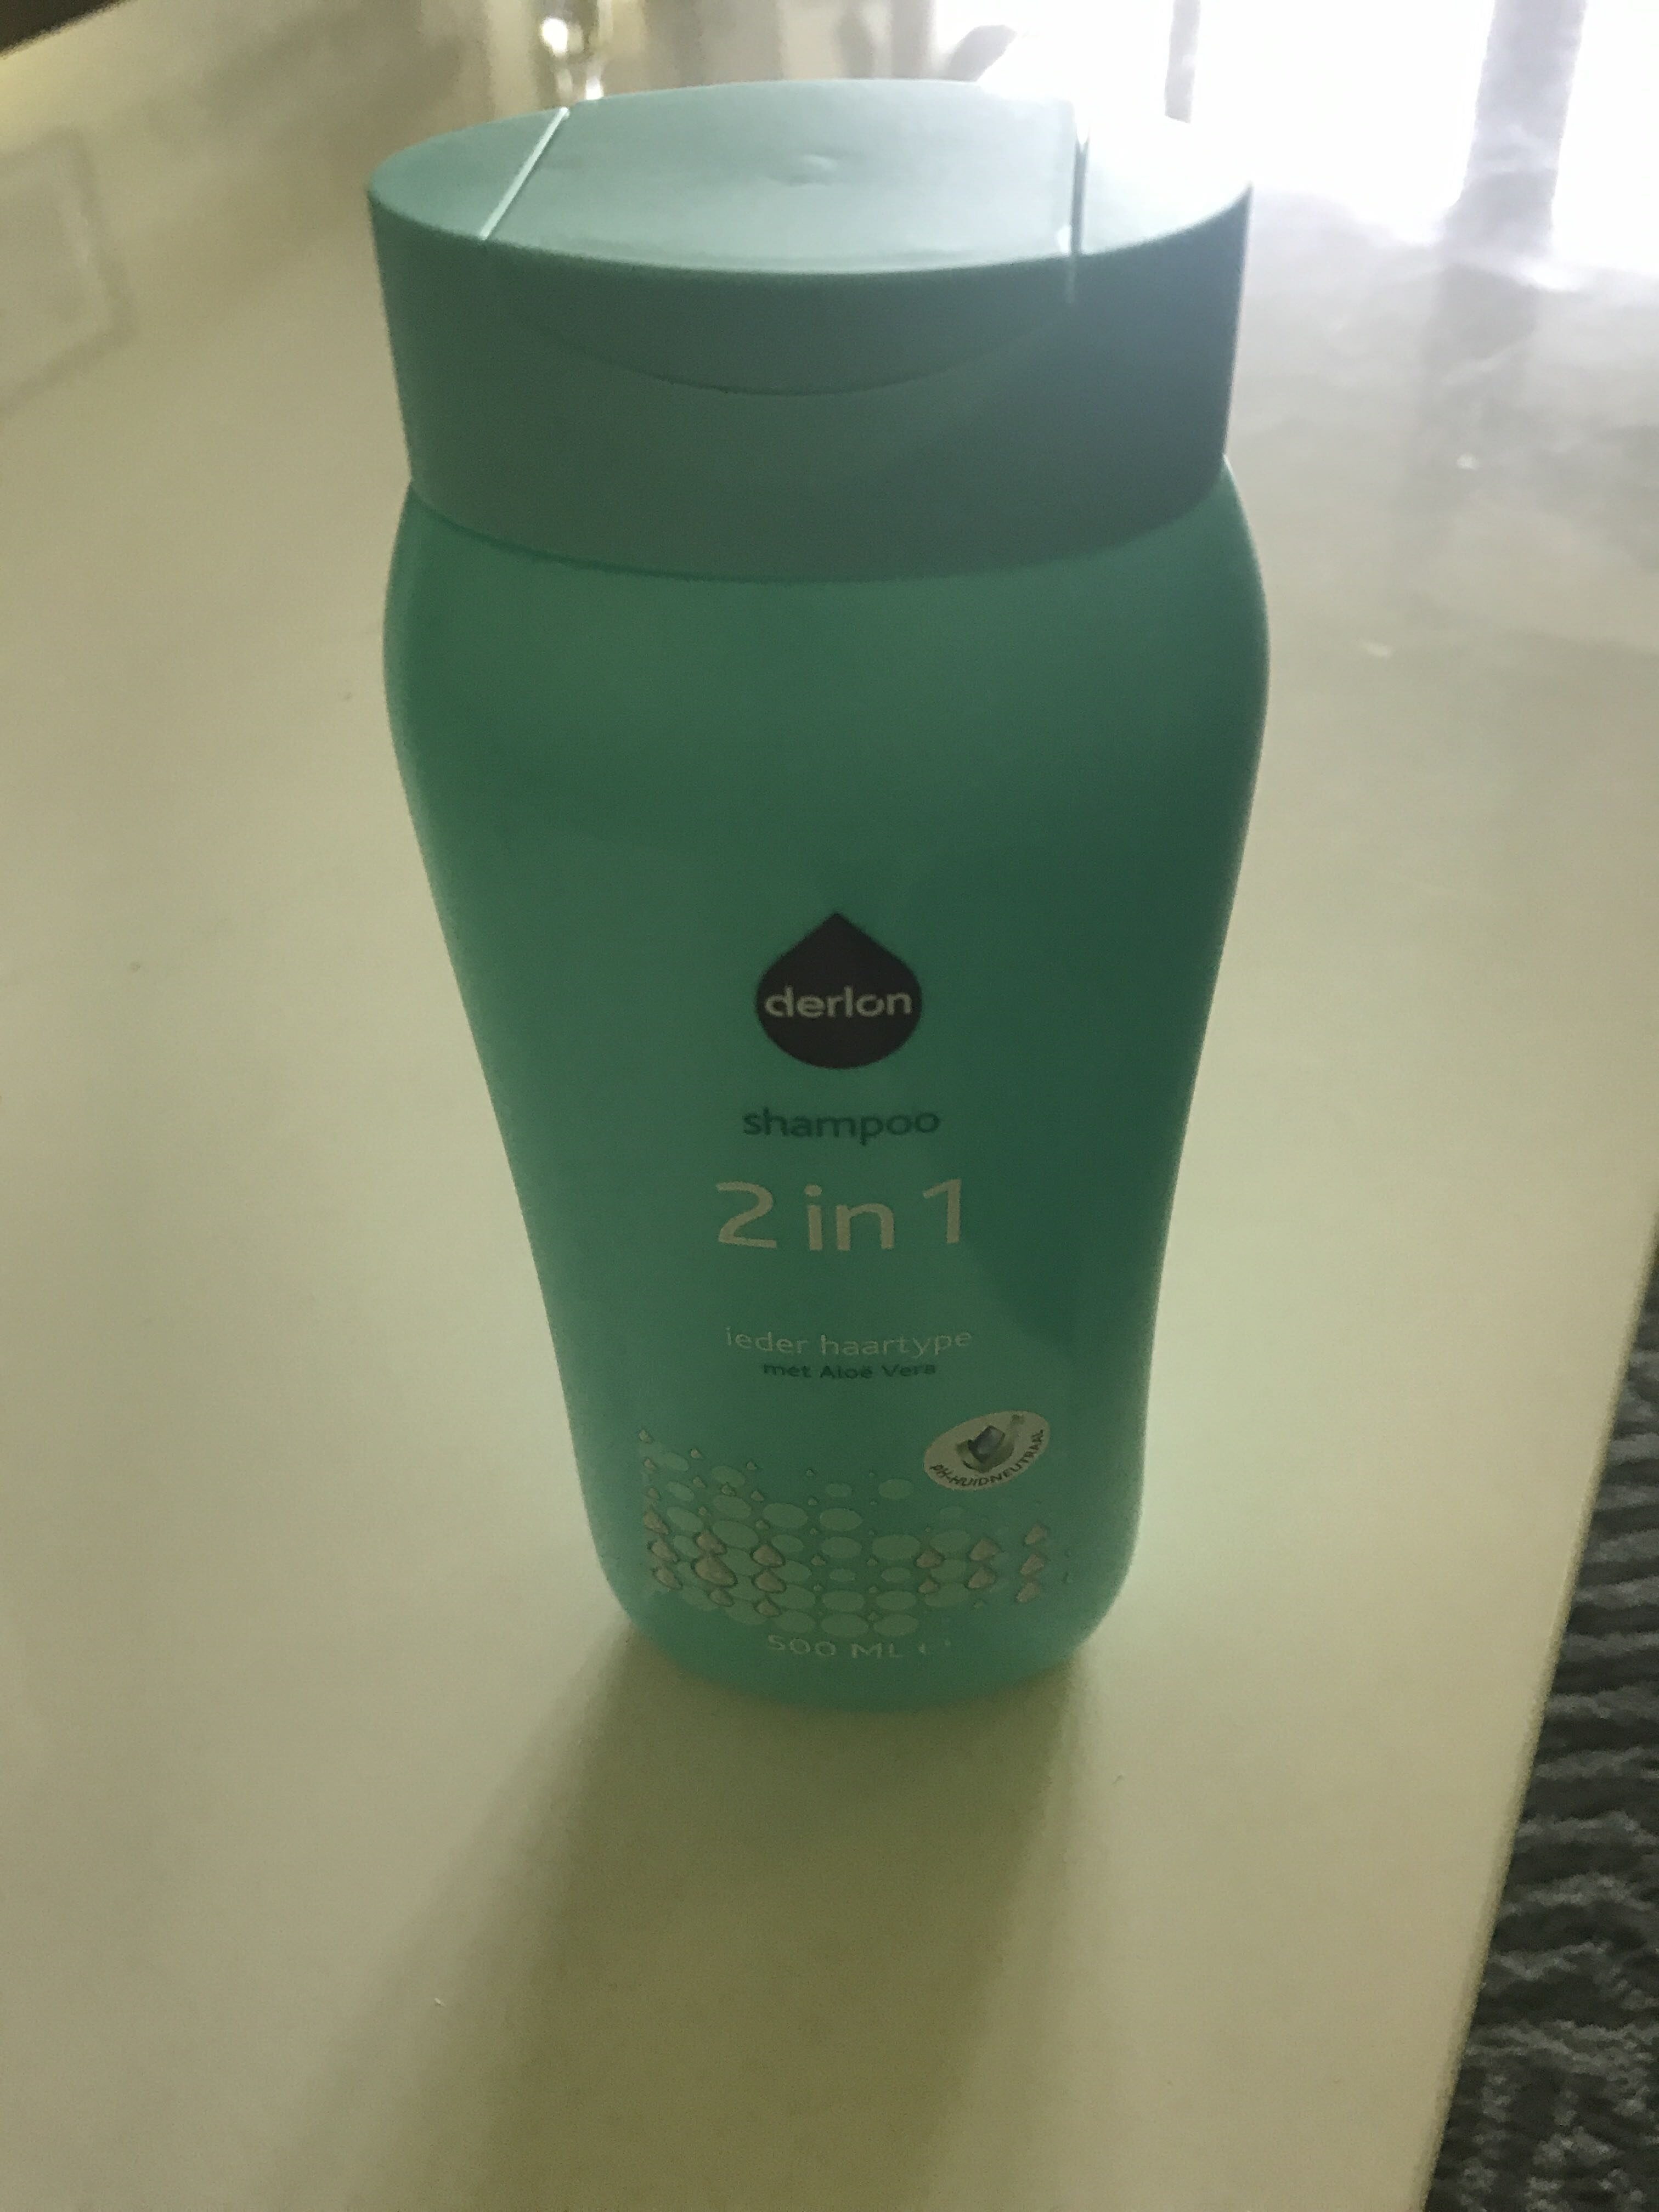 Shampoo 2 in 1 (aloe vera) - Продукт - en